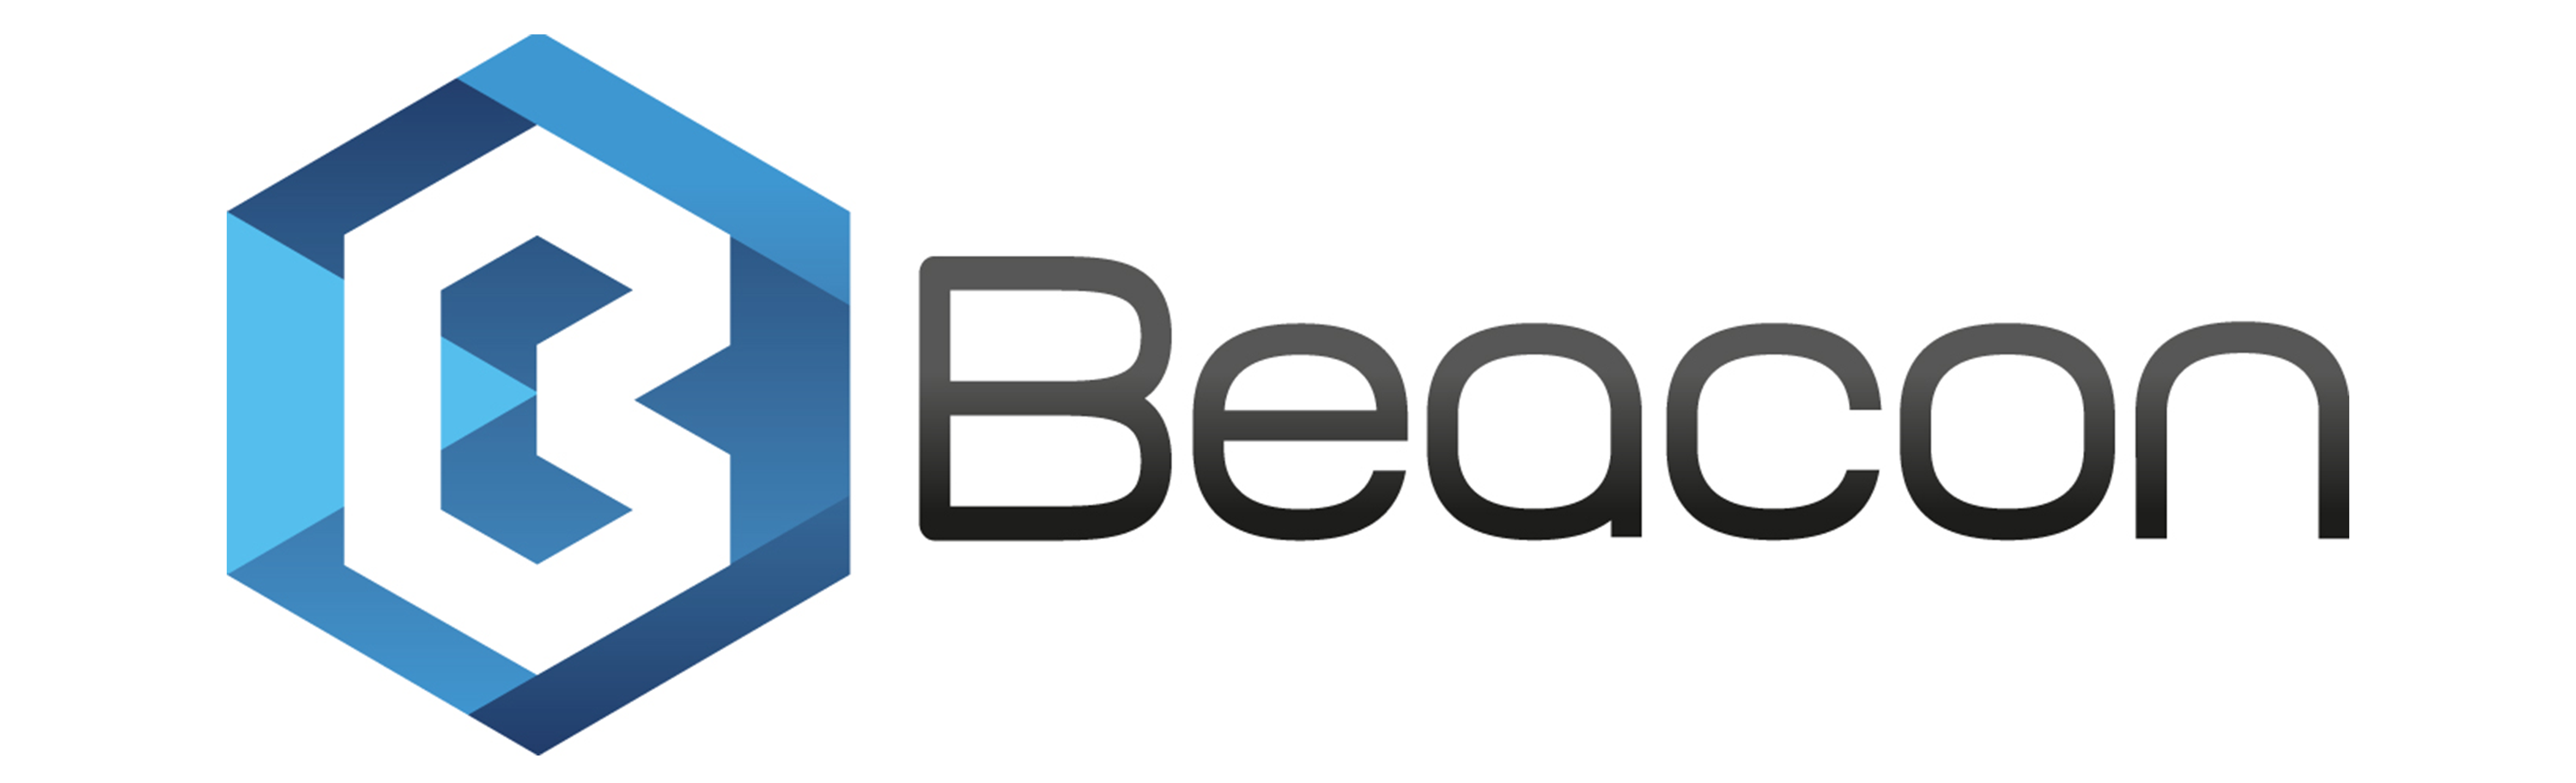 Beacon-logo-solo-MP-1